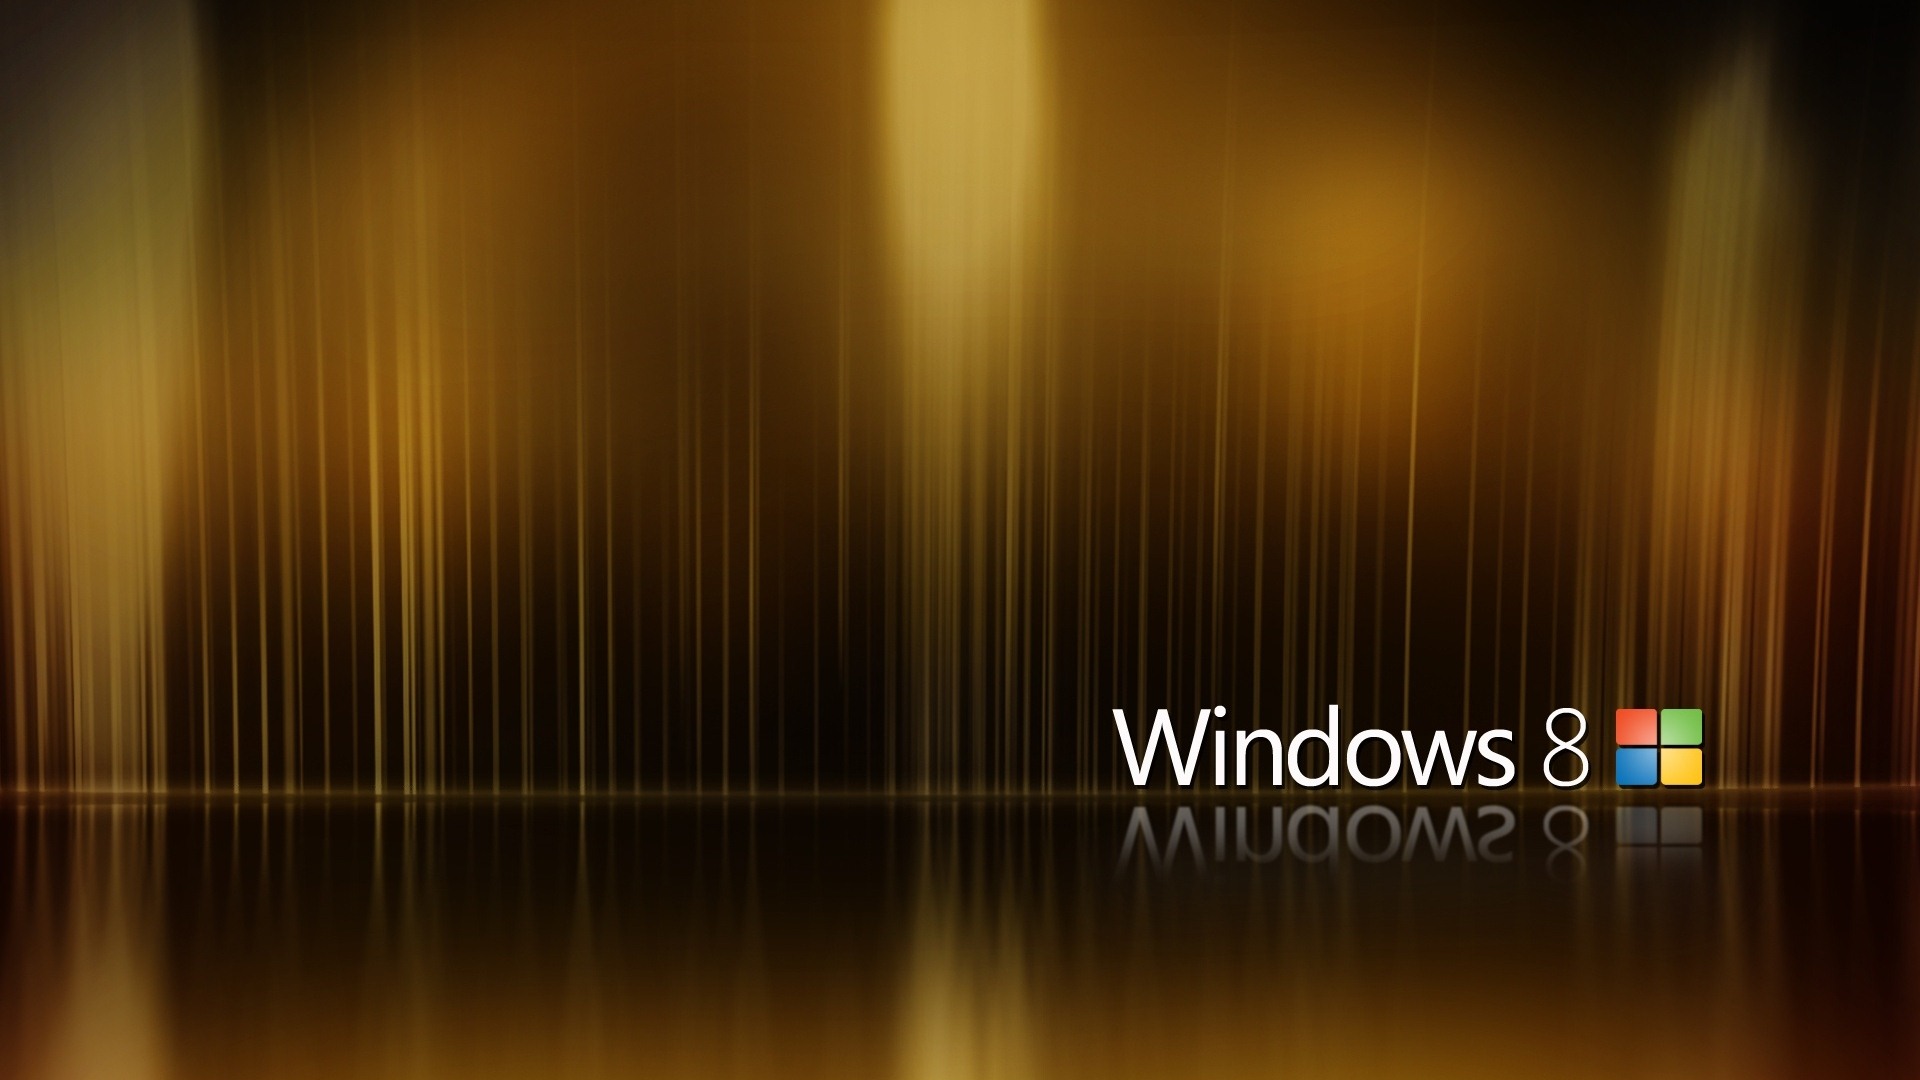 Fond d'écran Windows 8 Theme (2) #8 - 1920x1080